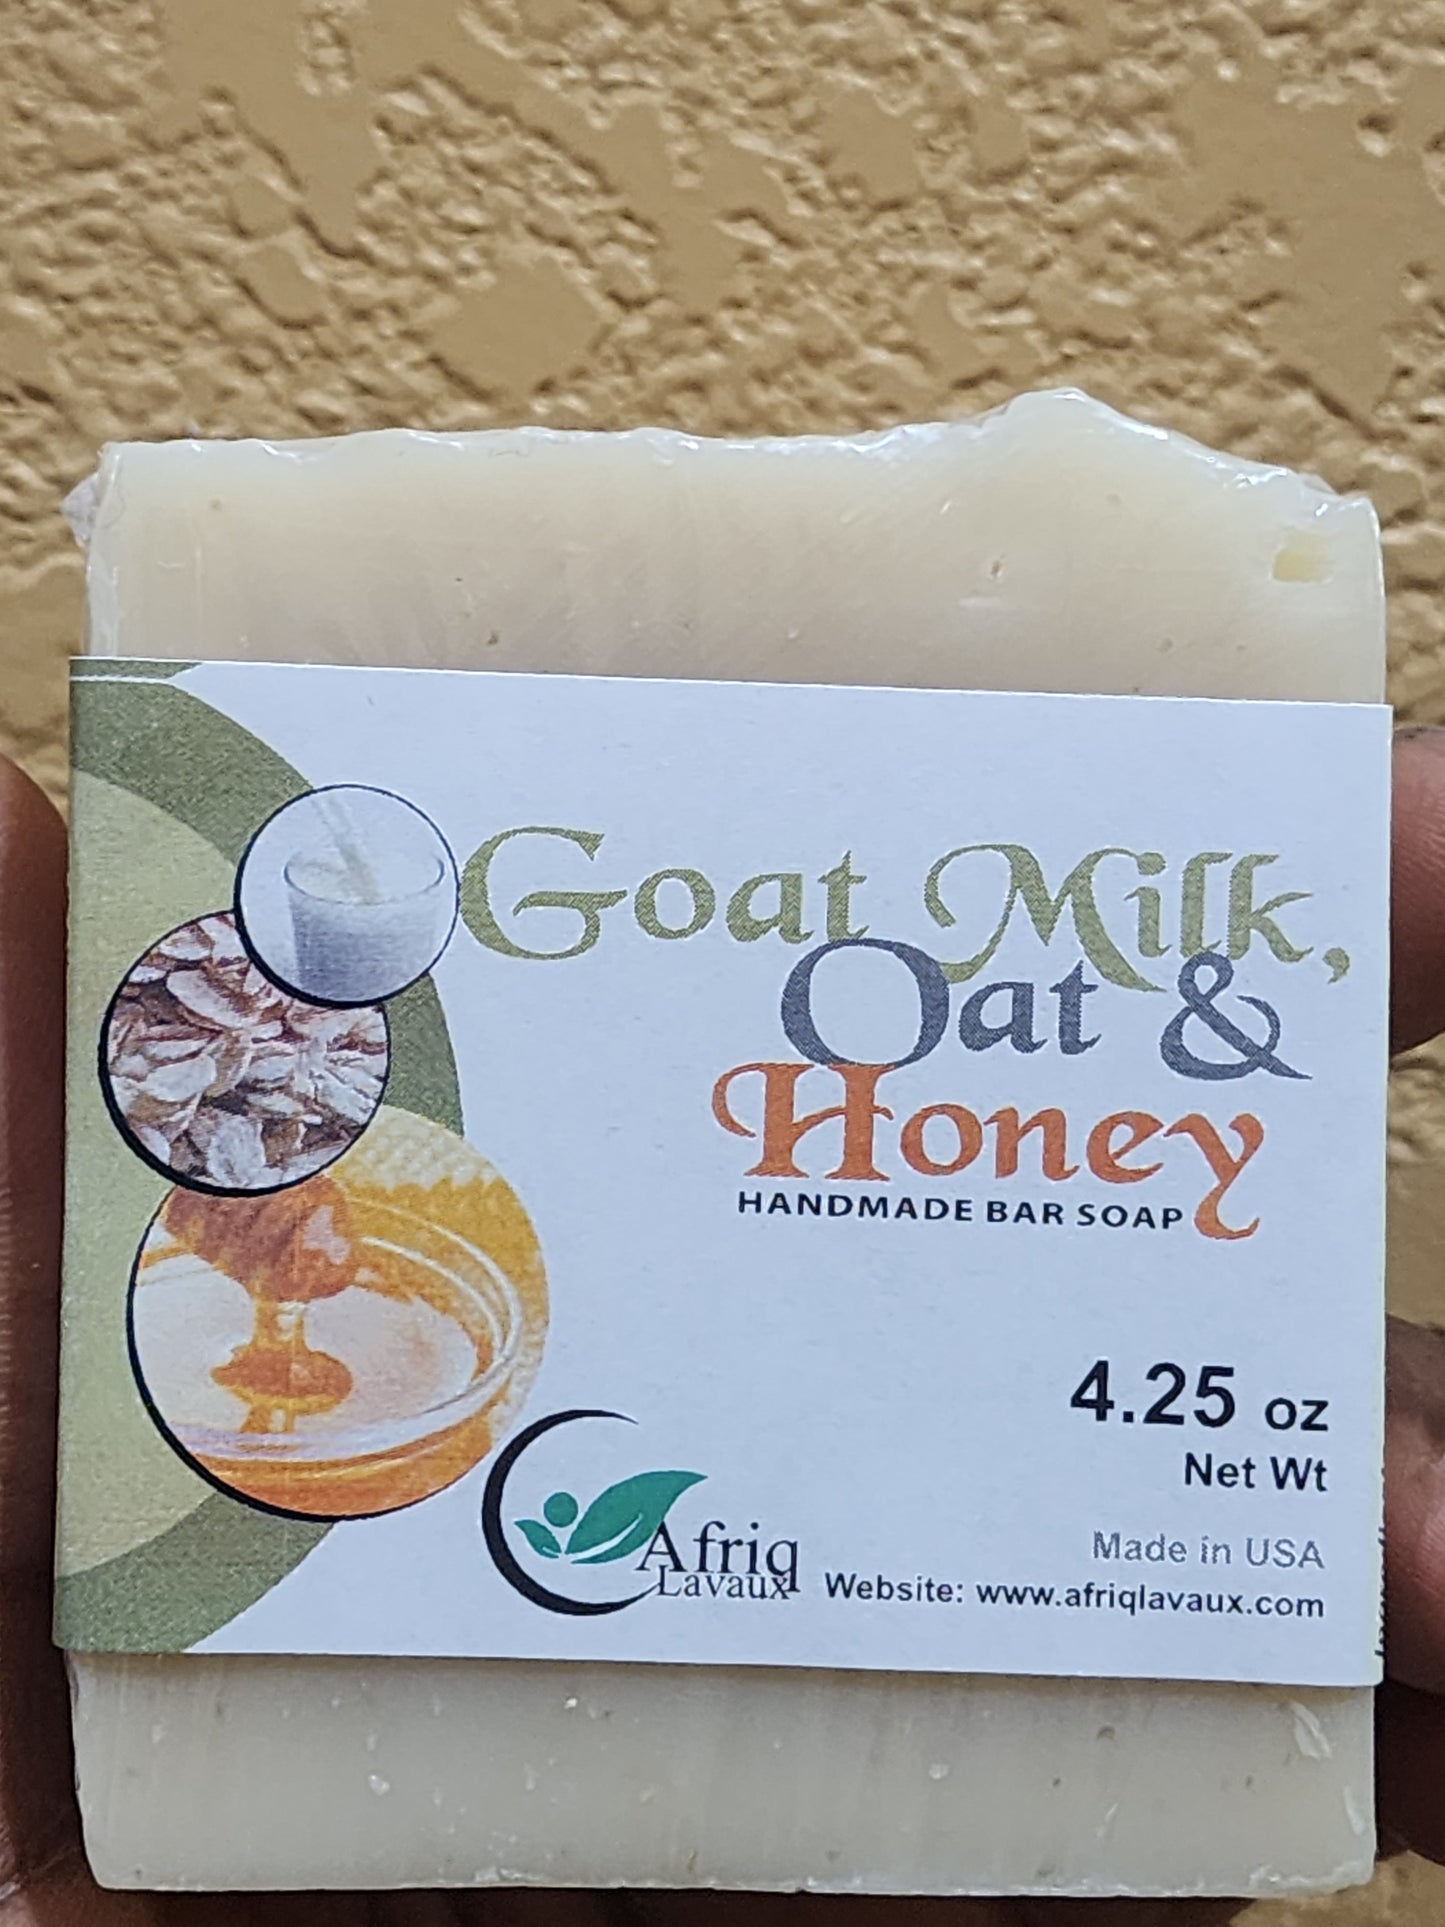 Goat Milk, Oat & Honey Handmade Bar Soap